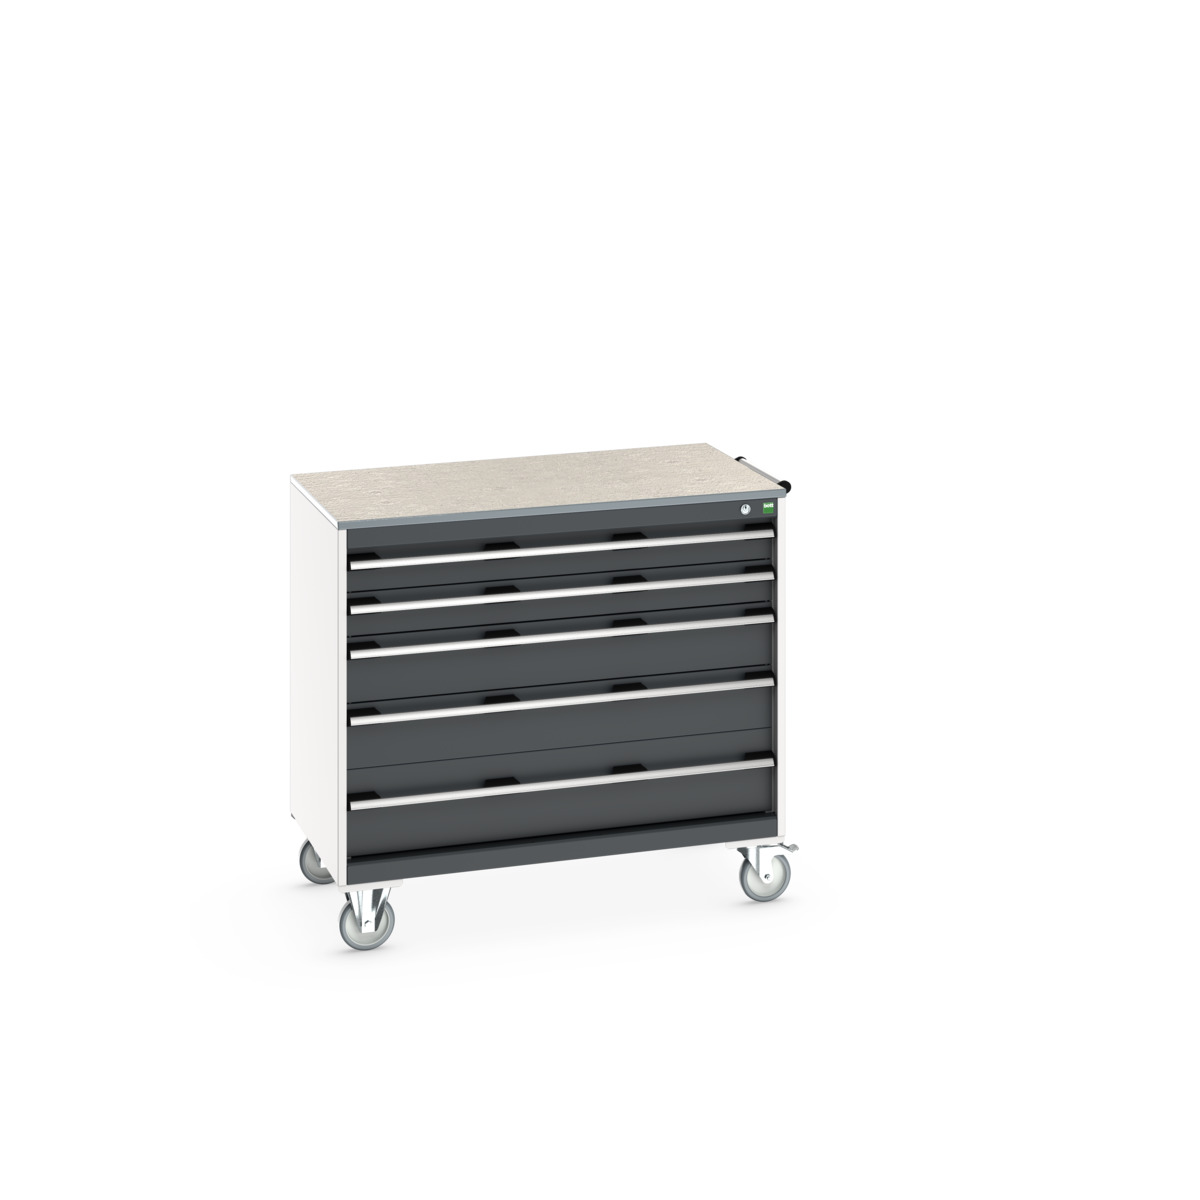 40402166. - cubio mobile cabinet